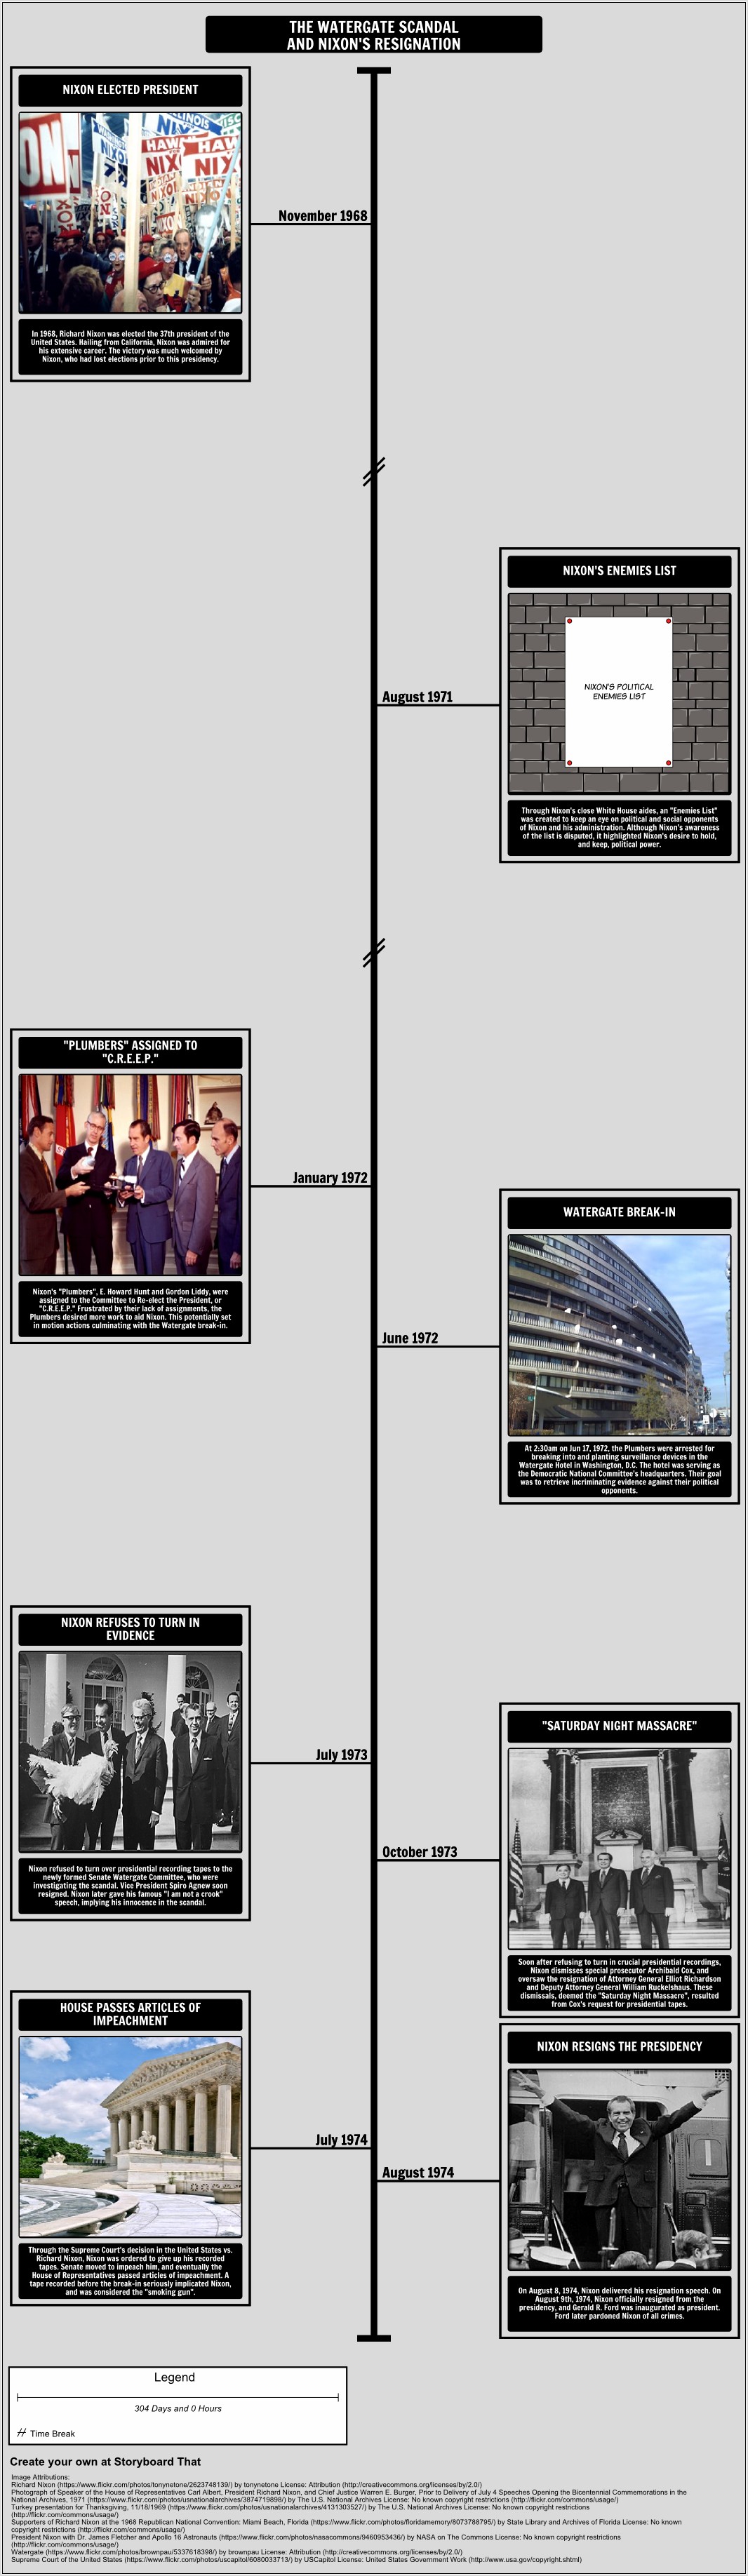 Watergate Scandal Timeline Worksheet